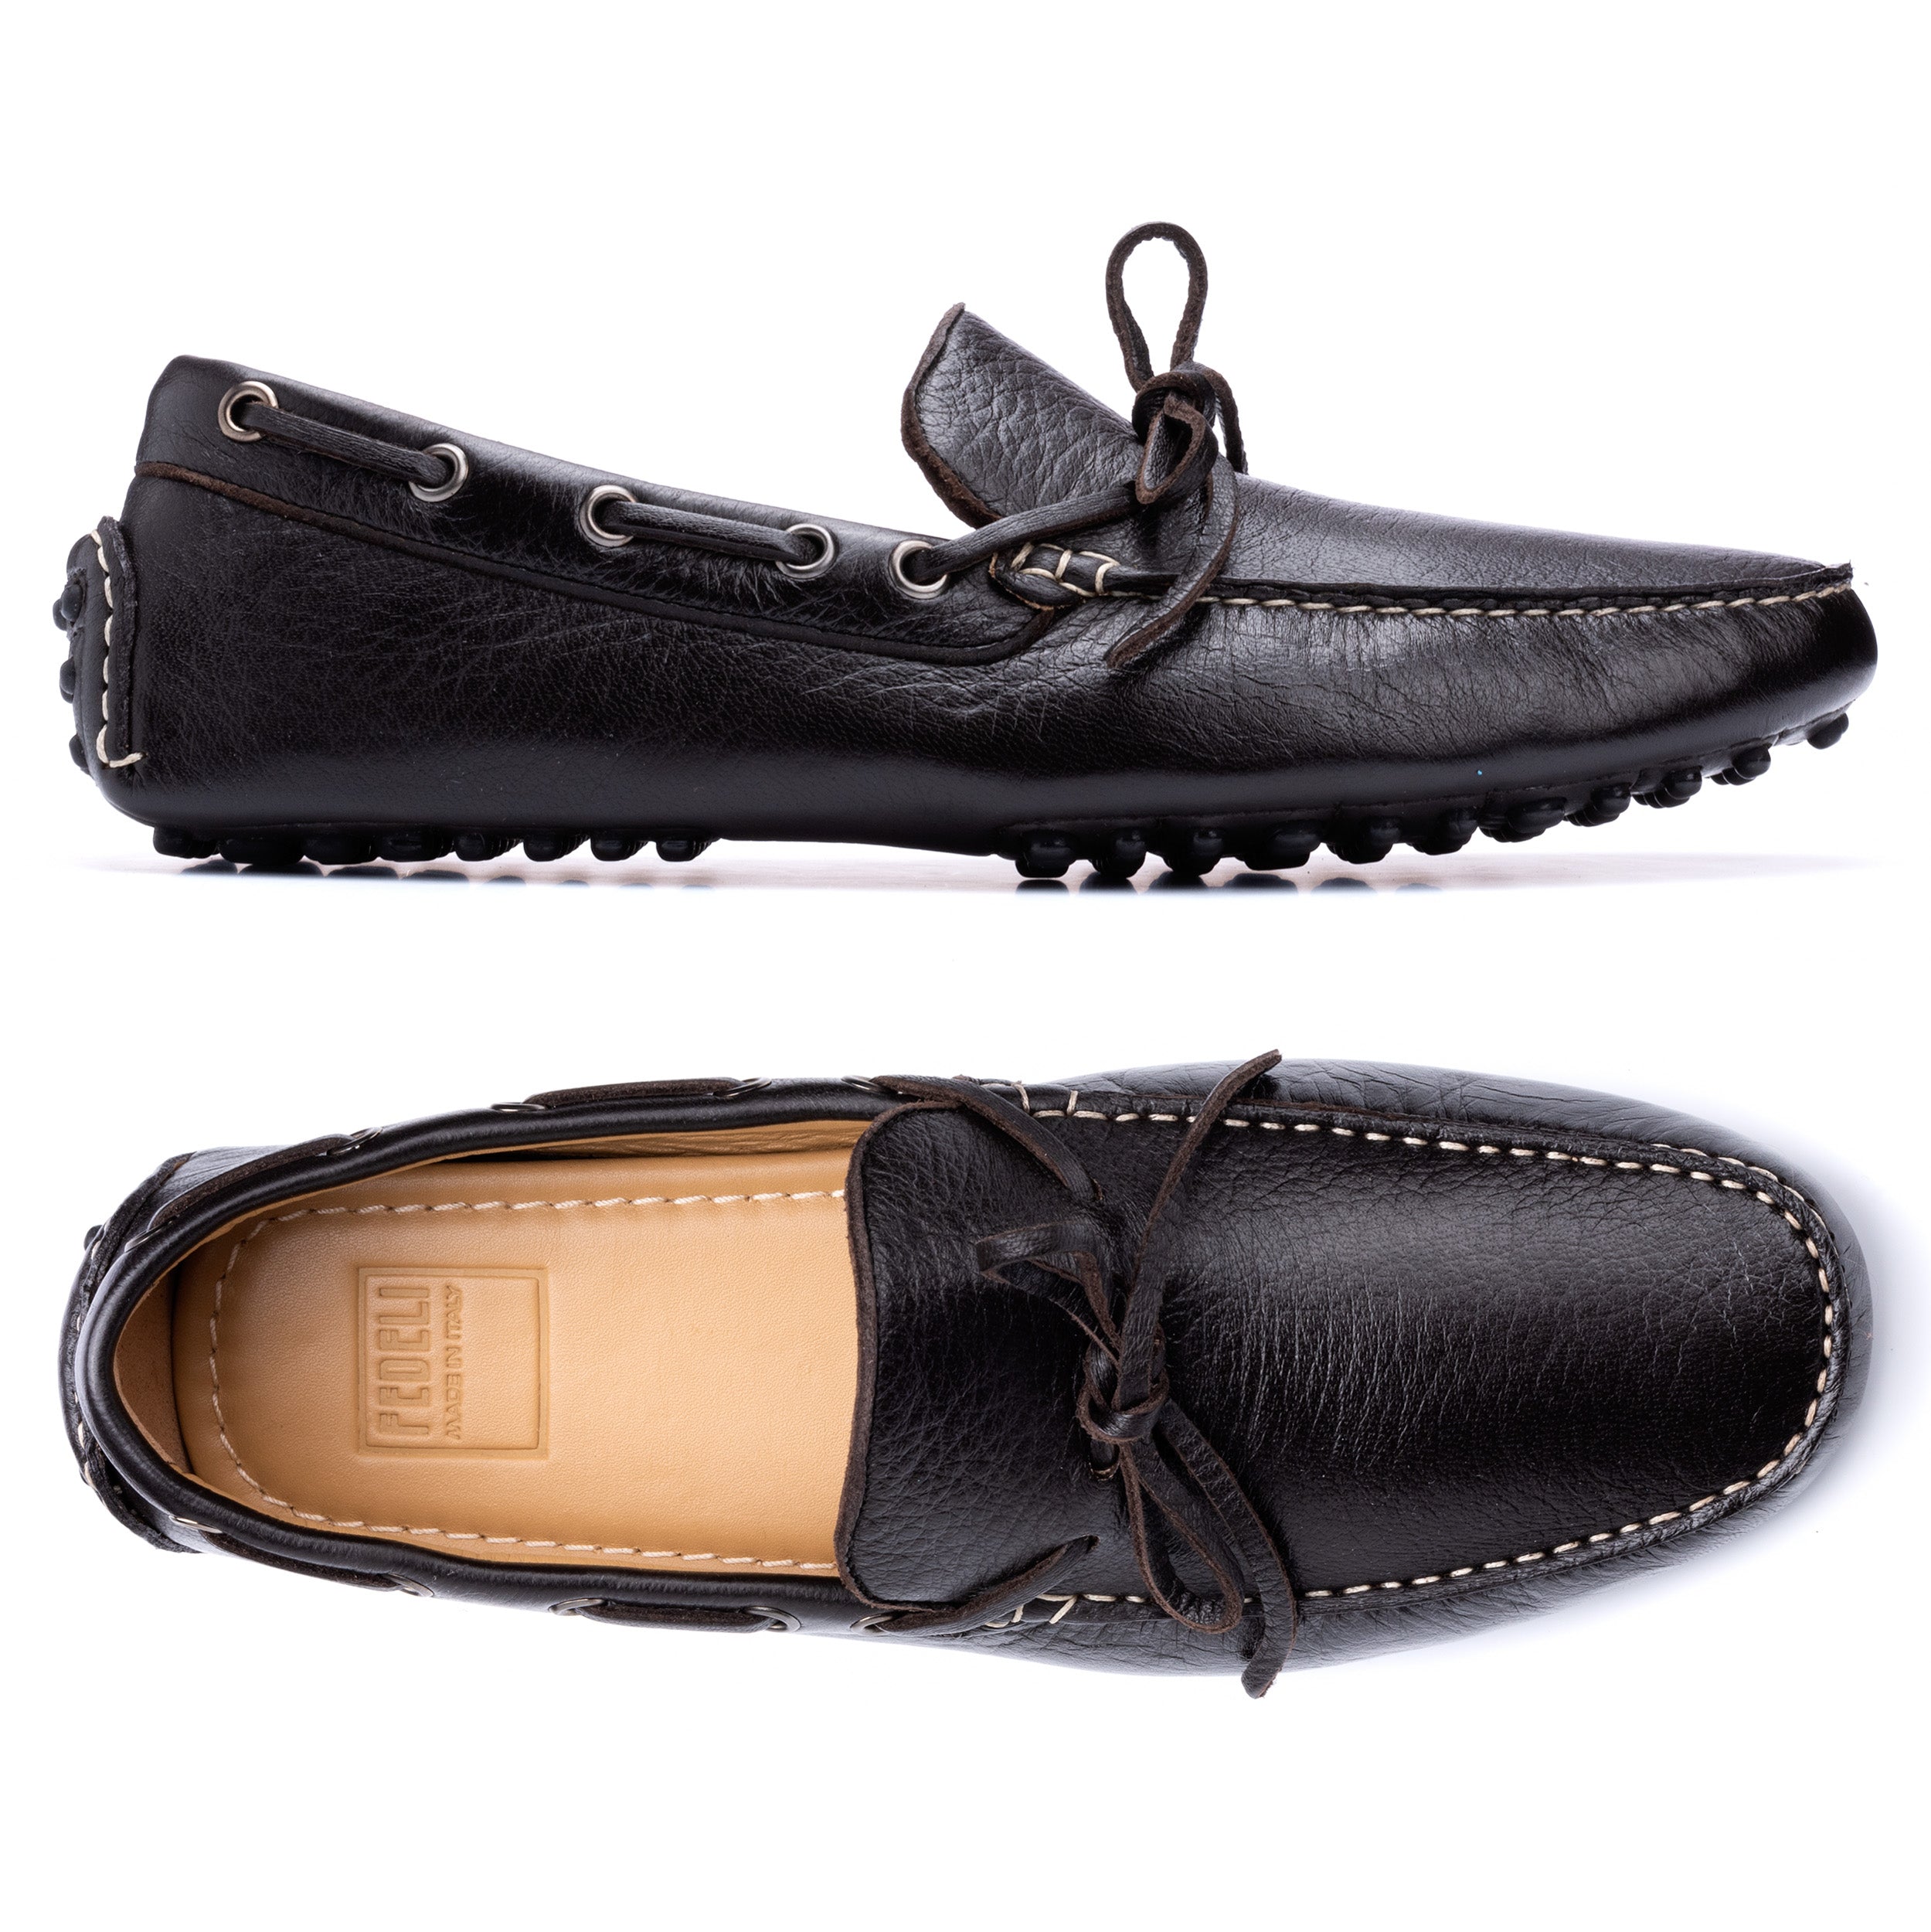 Buy Black Men's Loafers & Moccasins - The Sweden Black